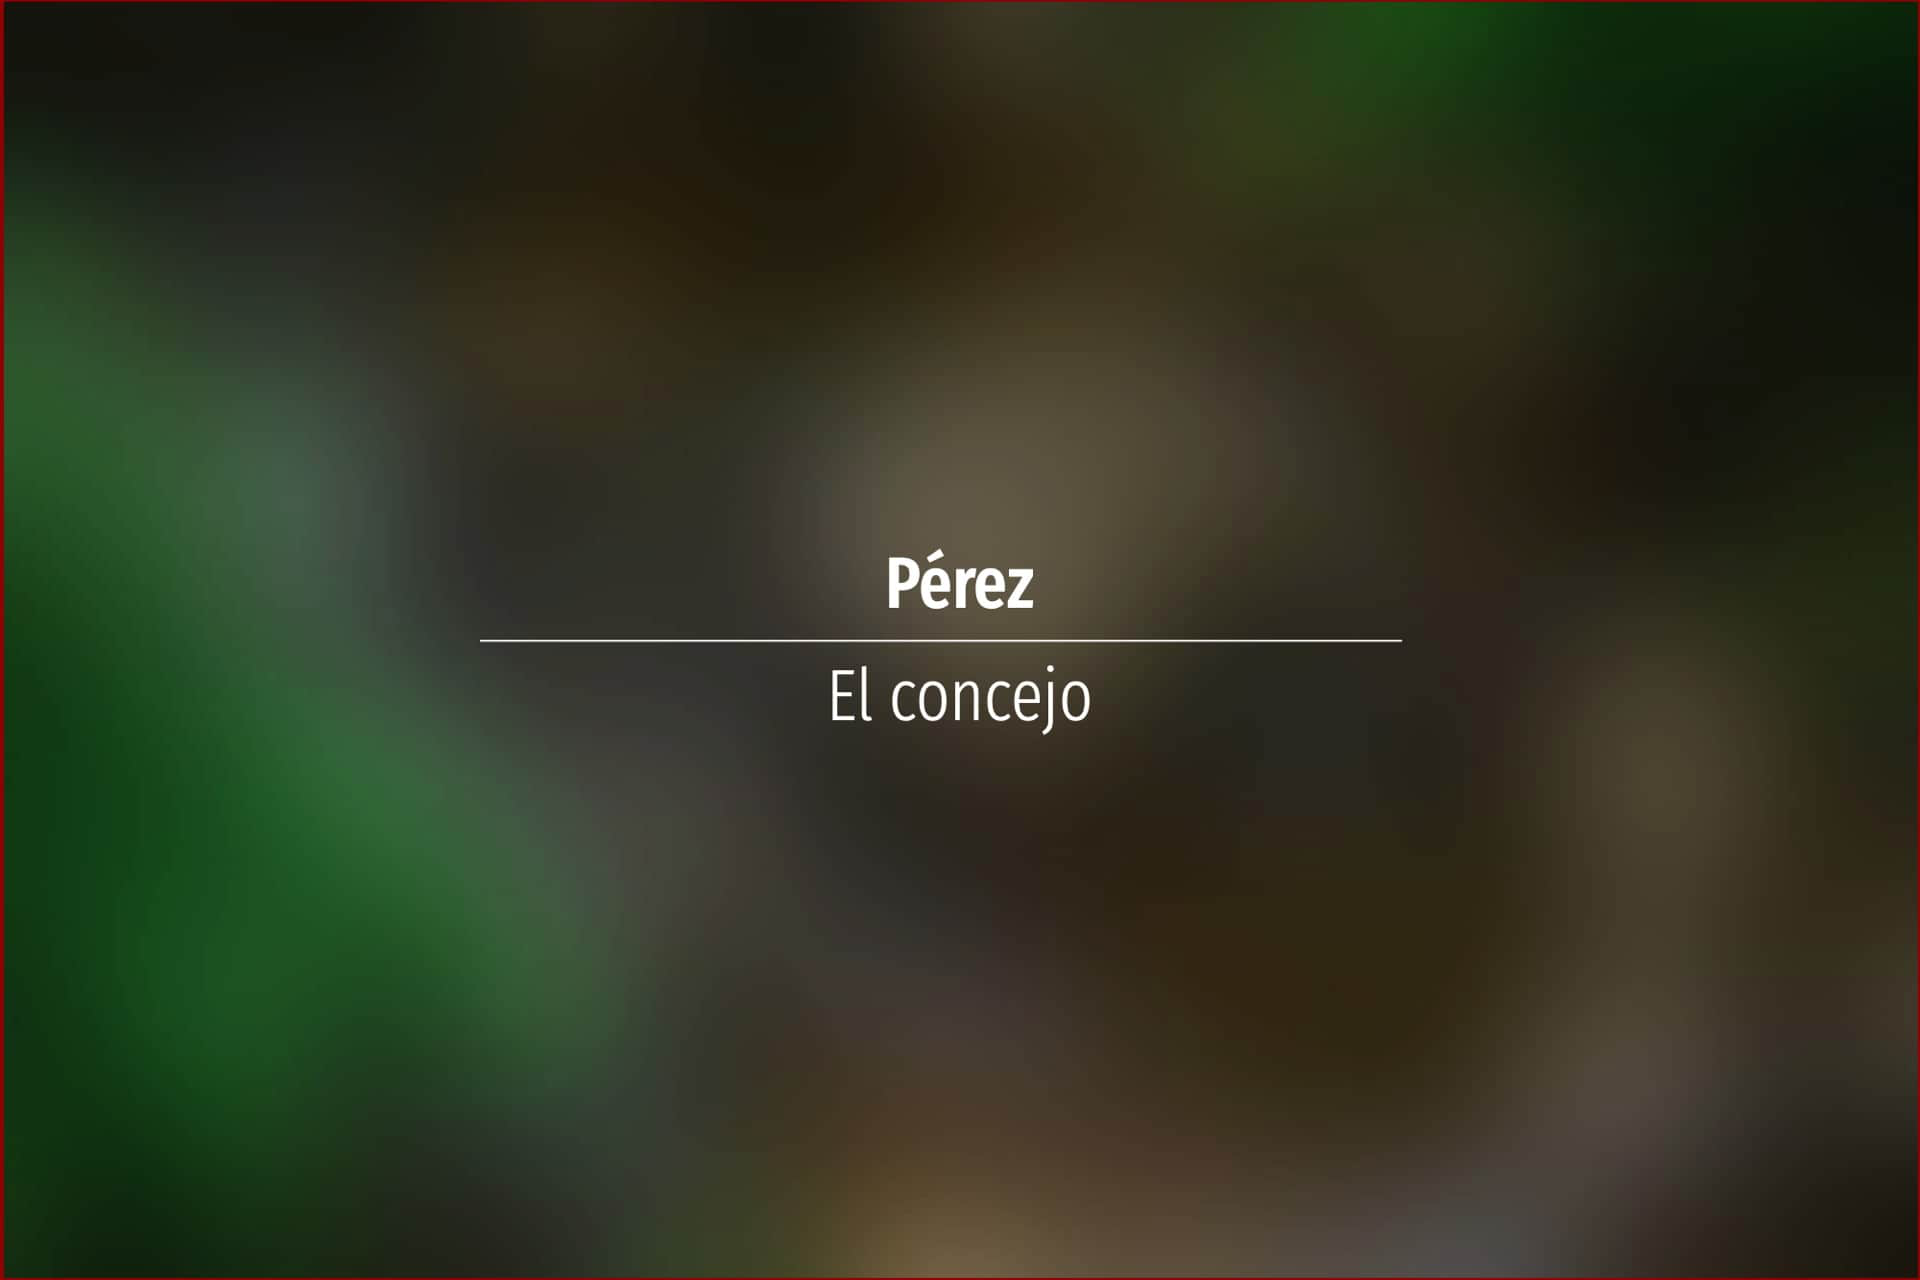 Pérez